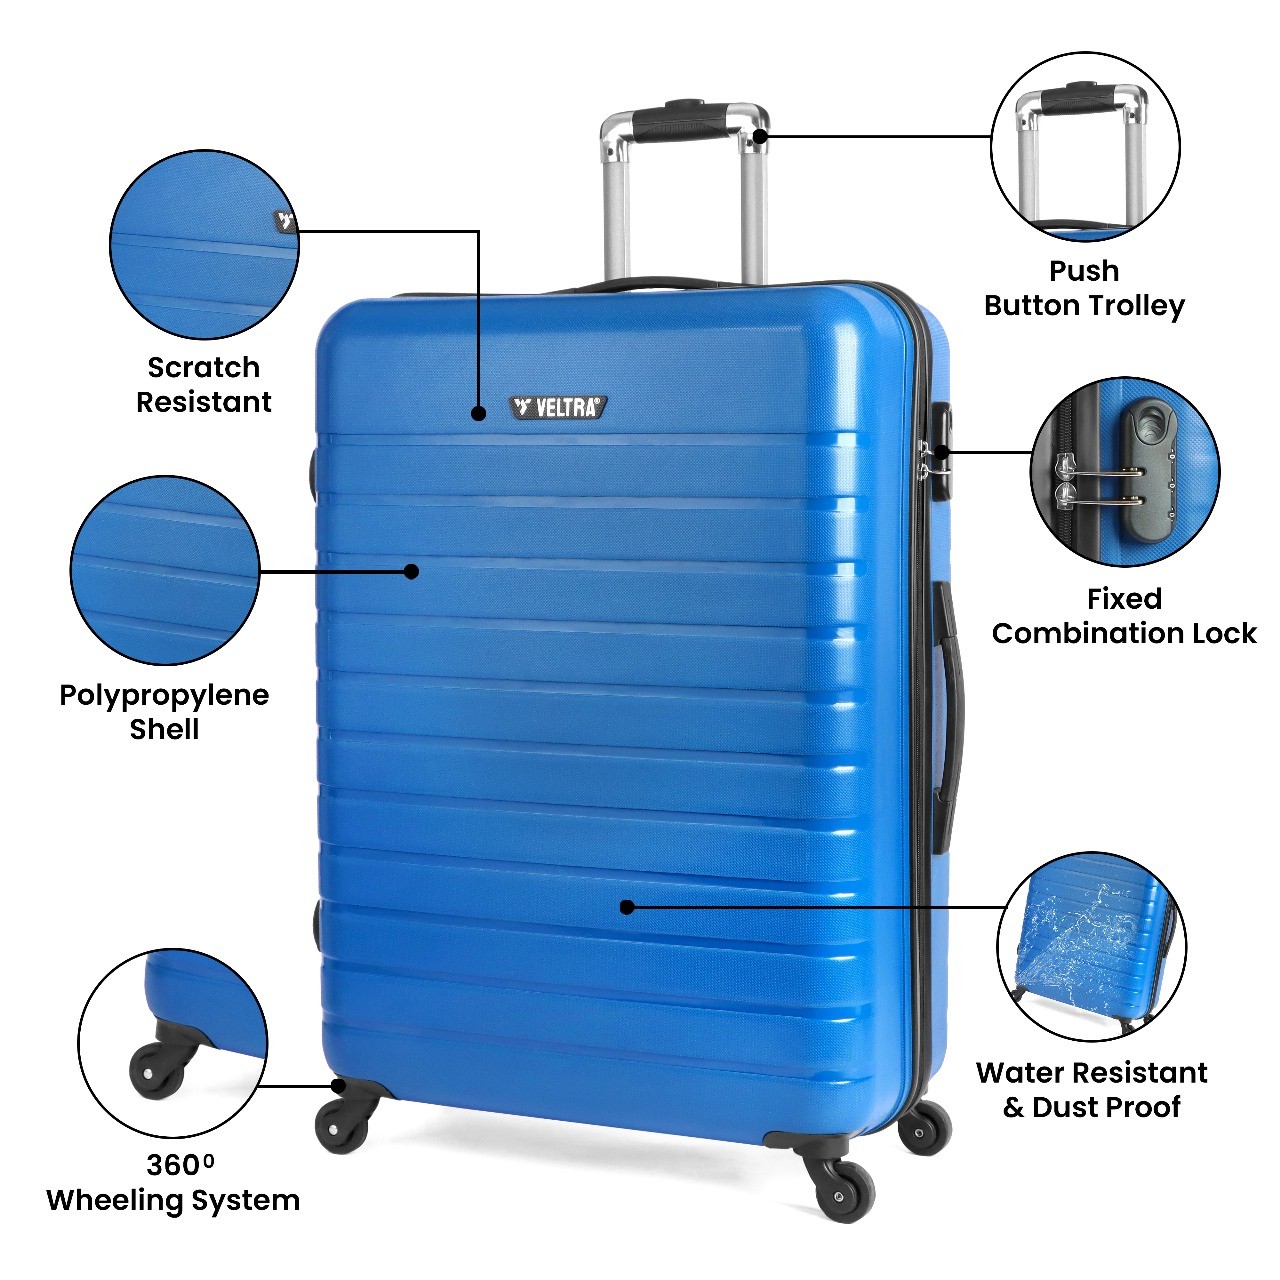 Ally Veltra Luggage Travel Bag  size Small, Medium, large